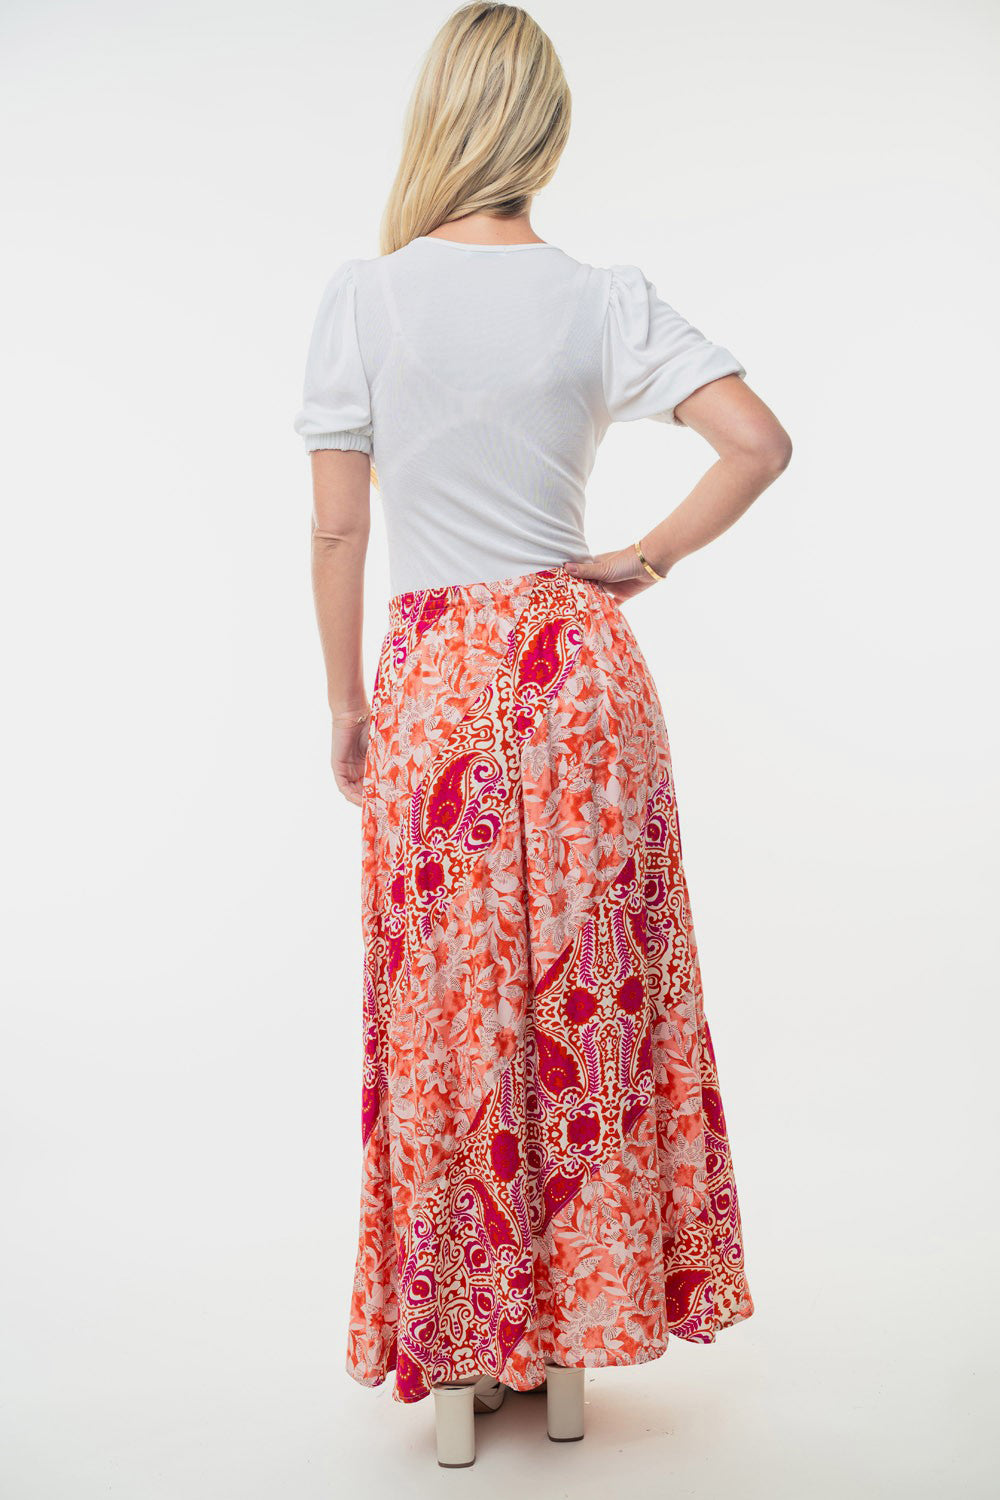 Stevie Floral Woven Skirt